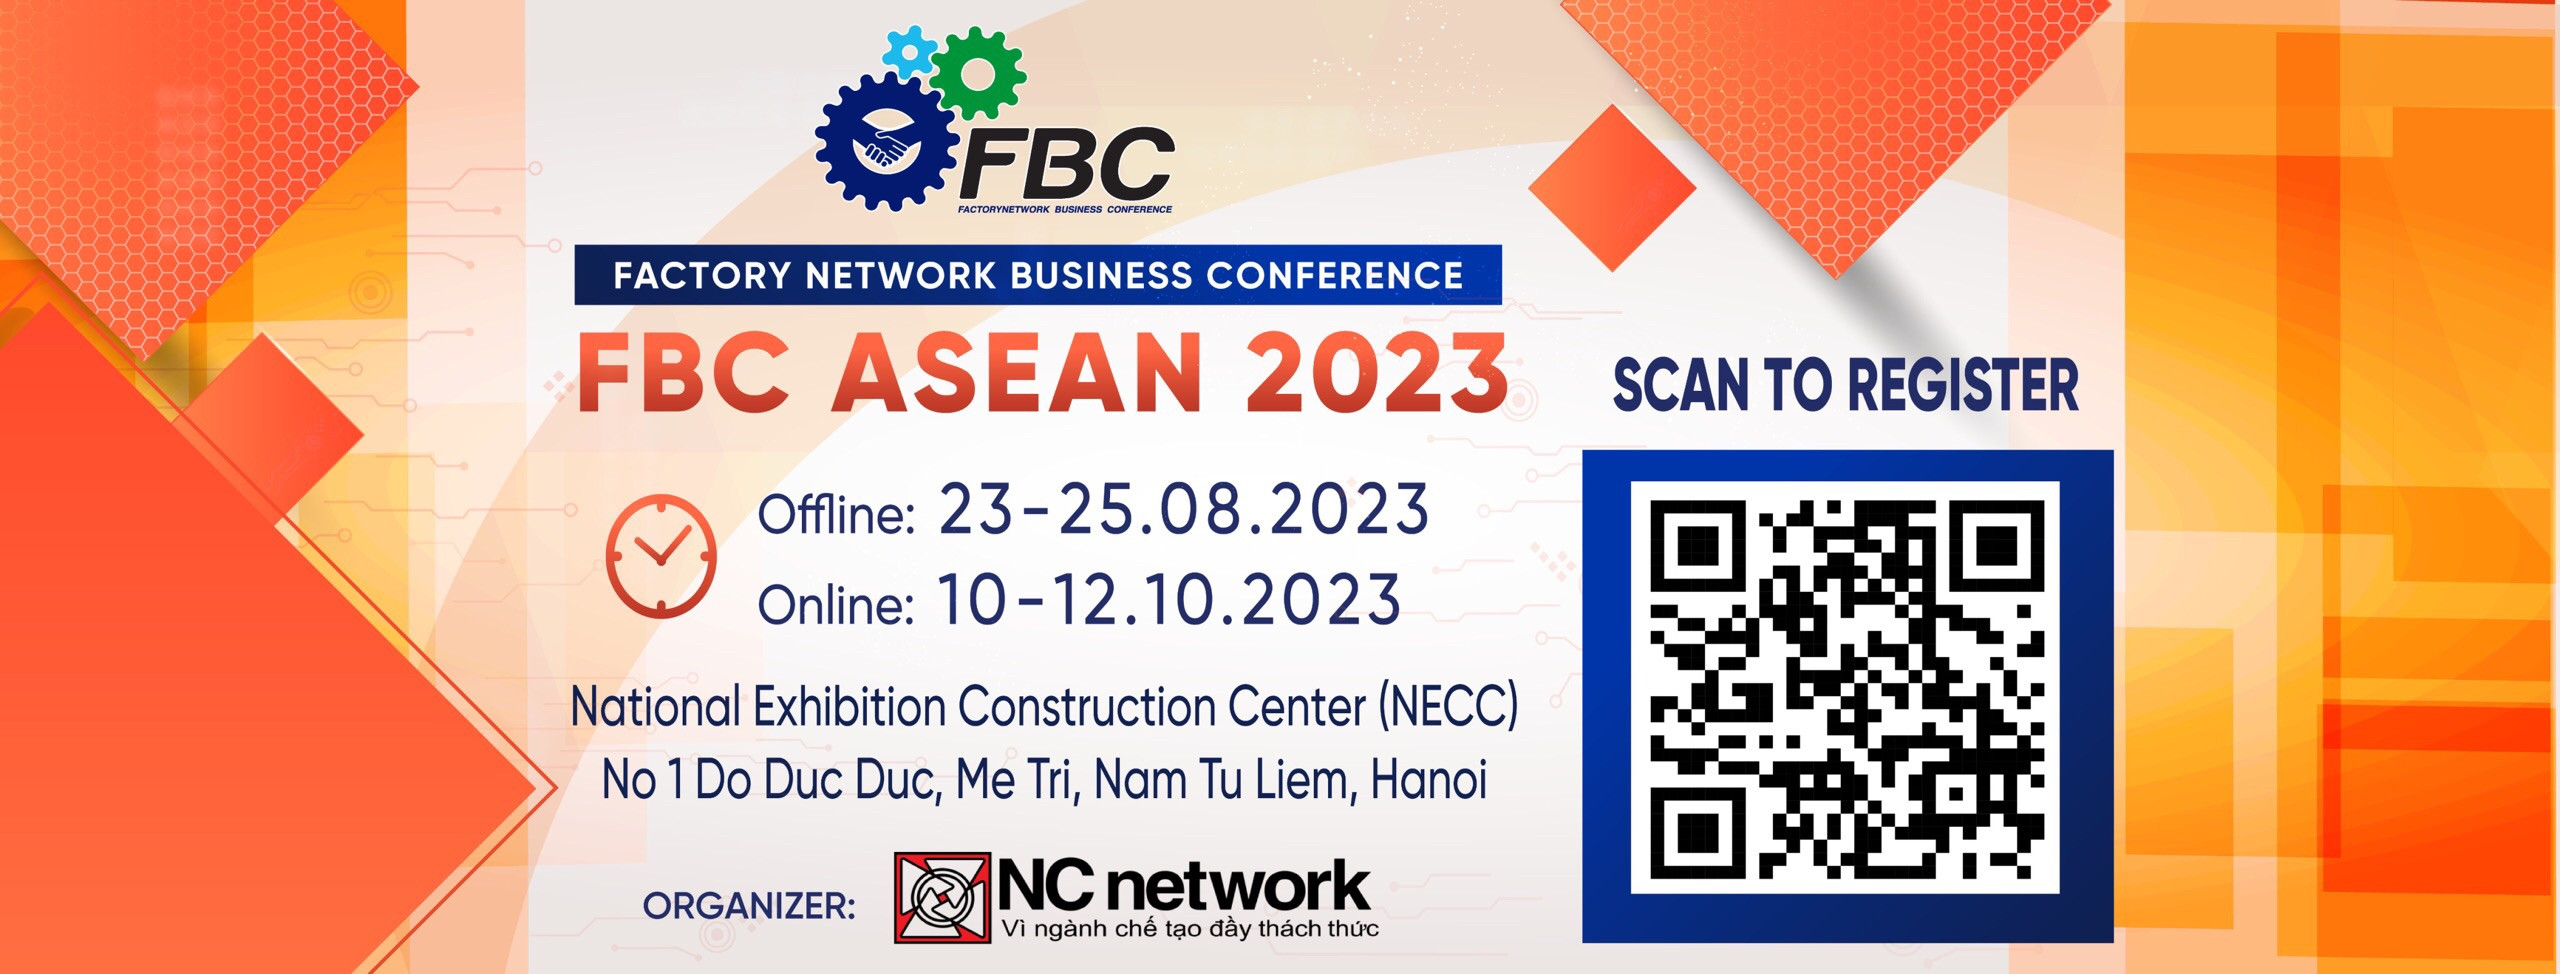 Hội chợ Giao thương Quốc tế Ngành chế tạo FBC ASEAN 2023 - Giới thiệu doanh nghiệp triển lãm (2)